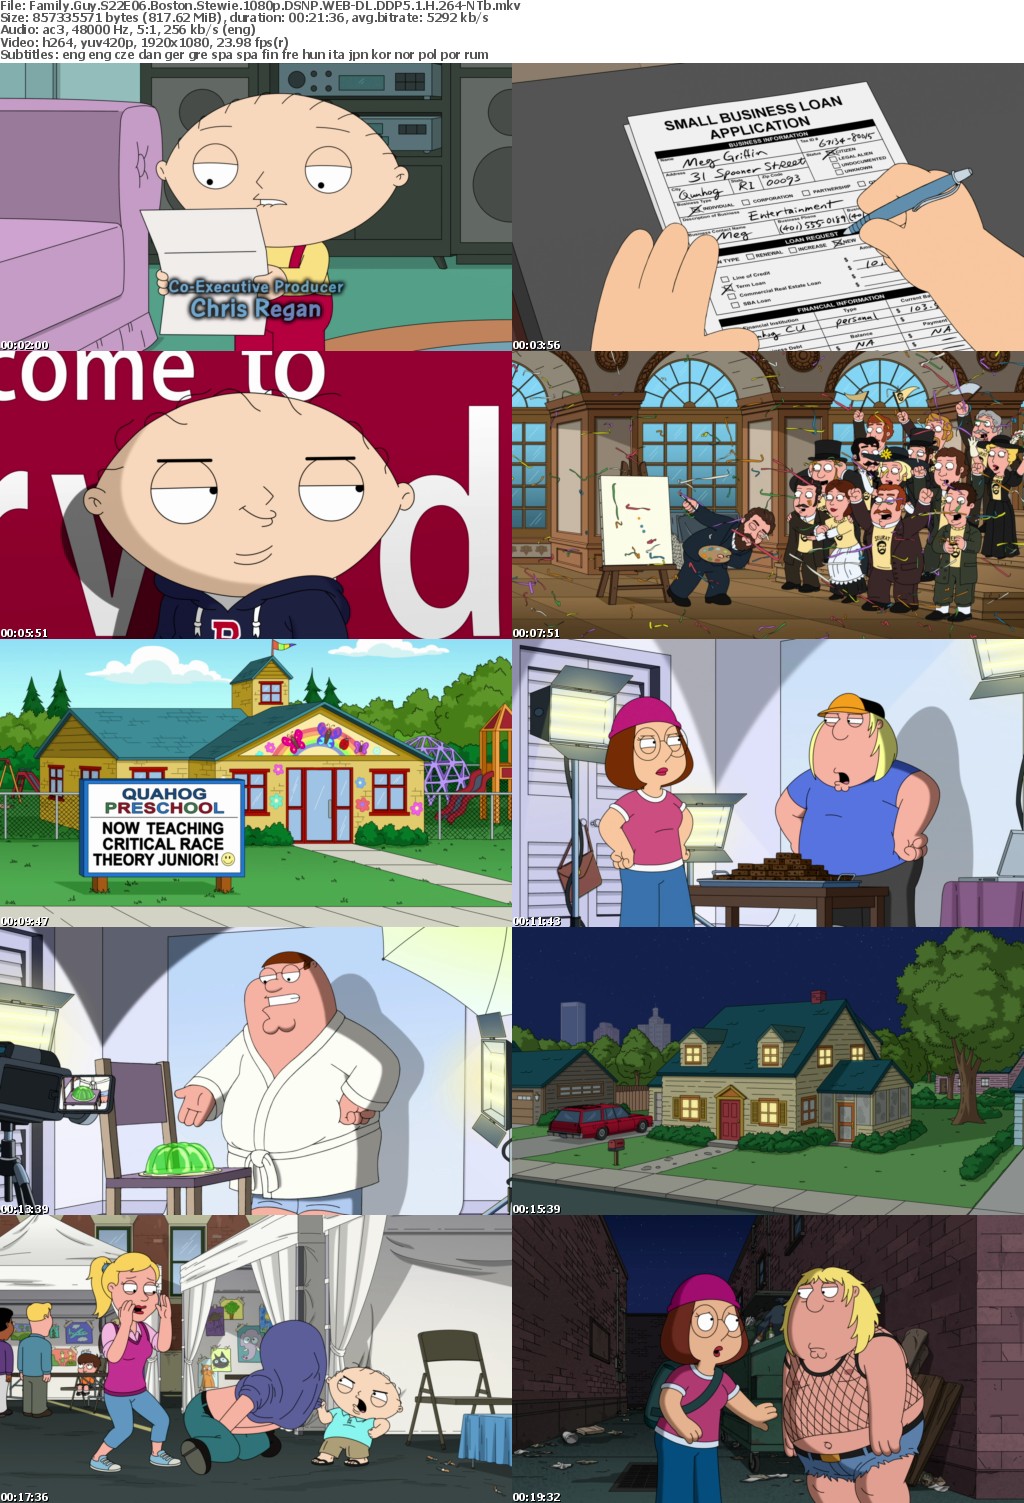 Family Guy S22E06 Boston Stewie 1080p DSNP WEB-DL DDP5 1 H 264-NTb